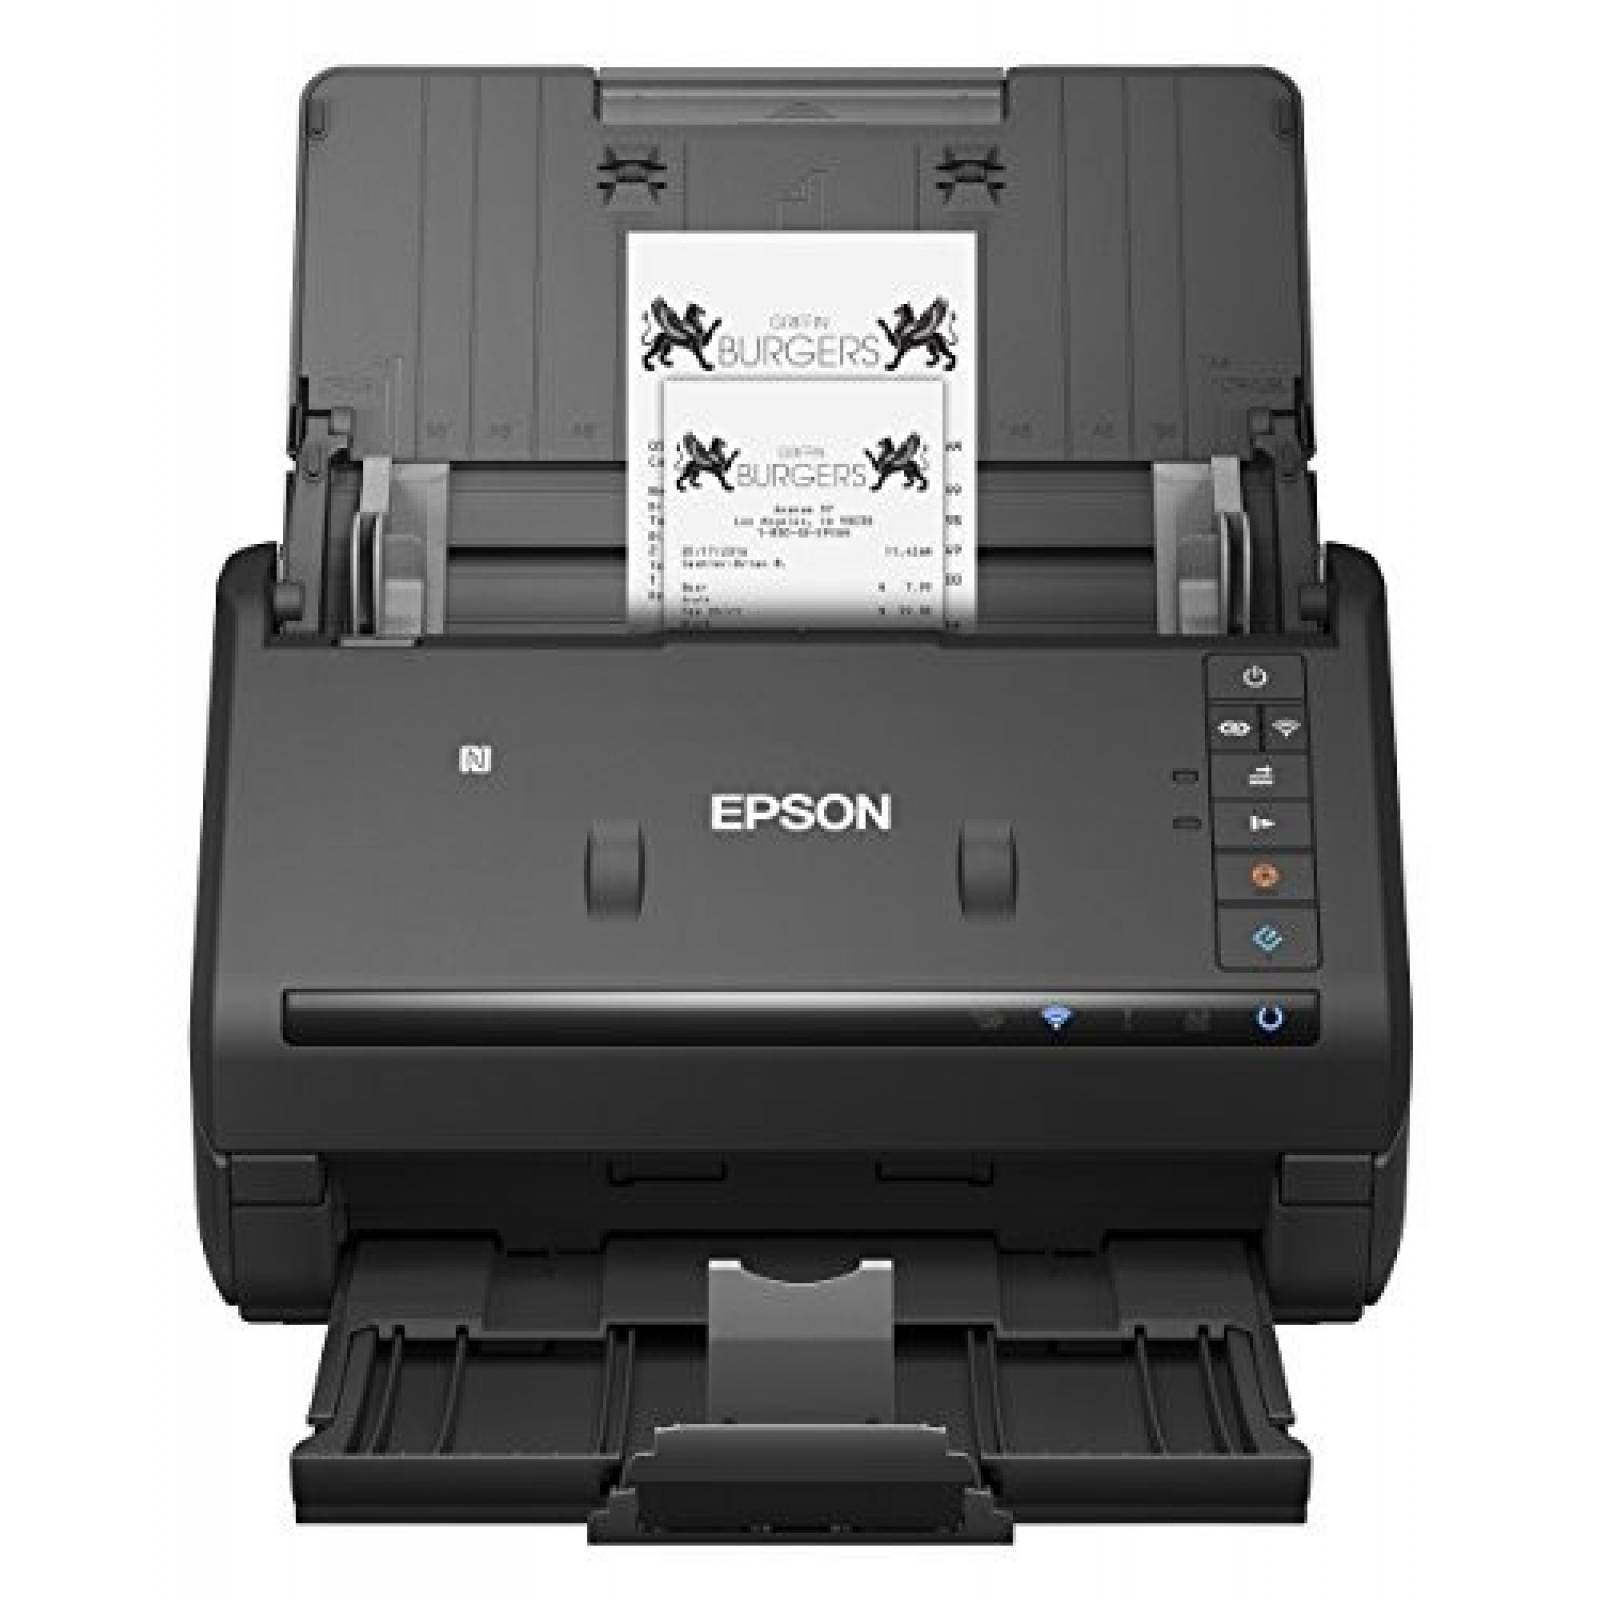 Escáner de documentos Epson WorkForce ES-500W inalámbrico